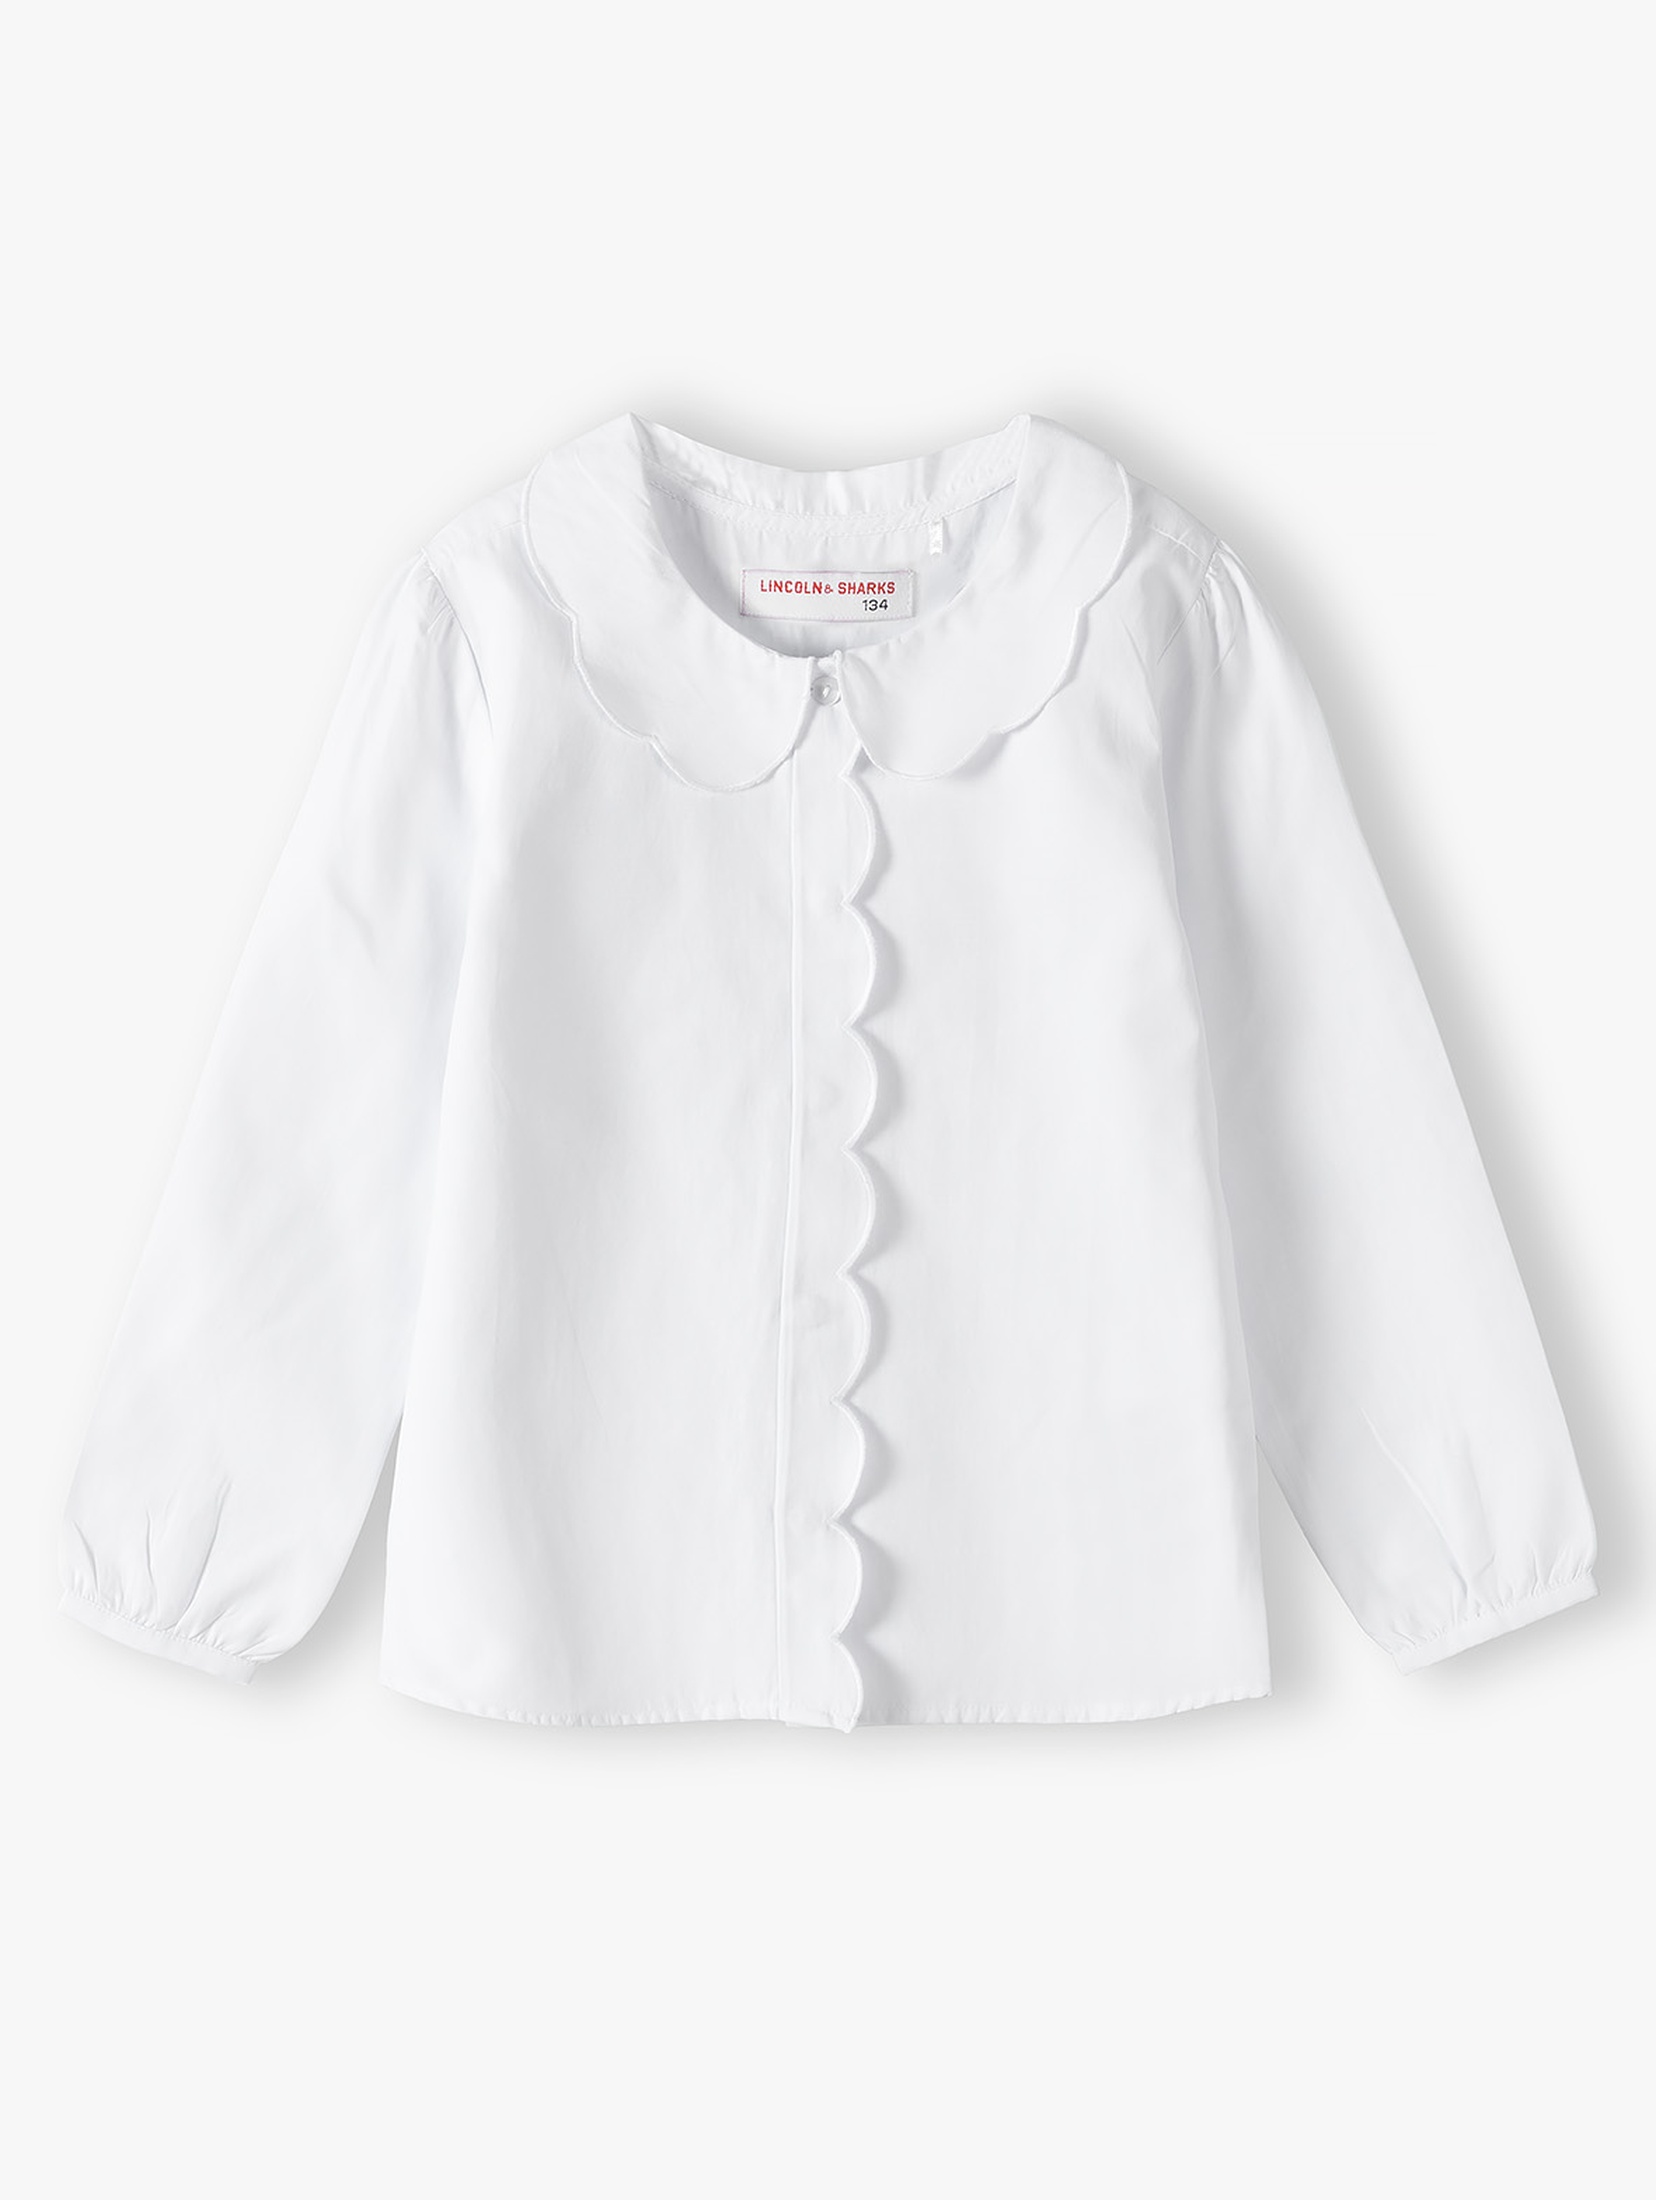 Biała elegancka koszula dla dziewczynki